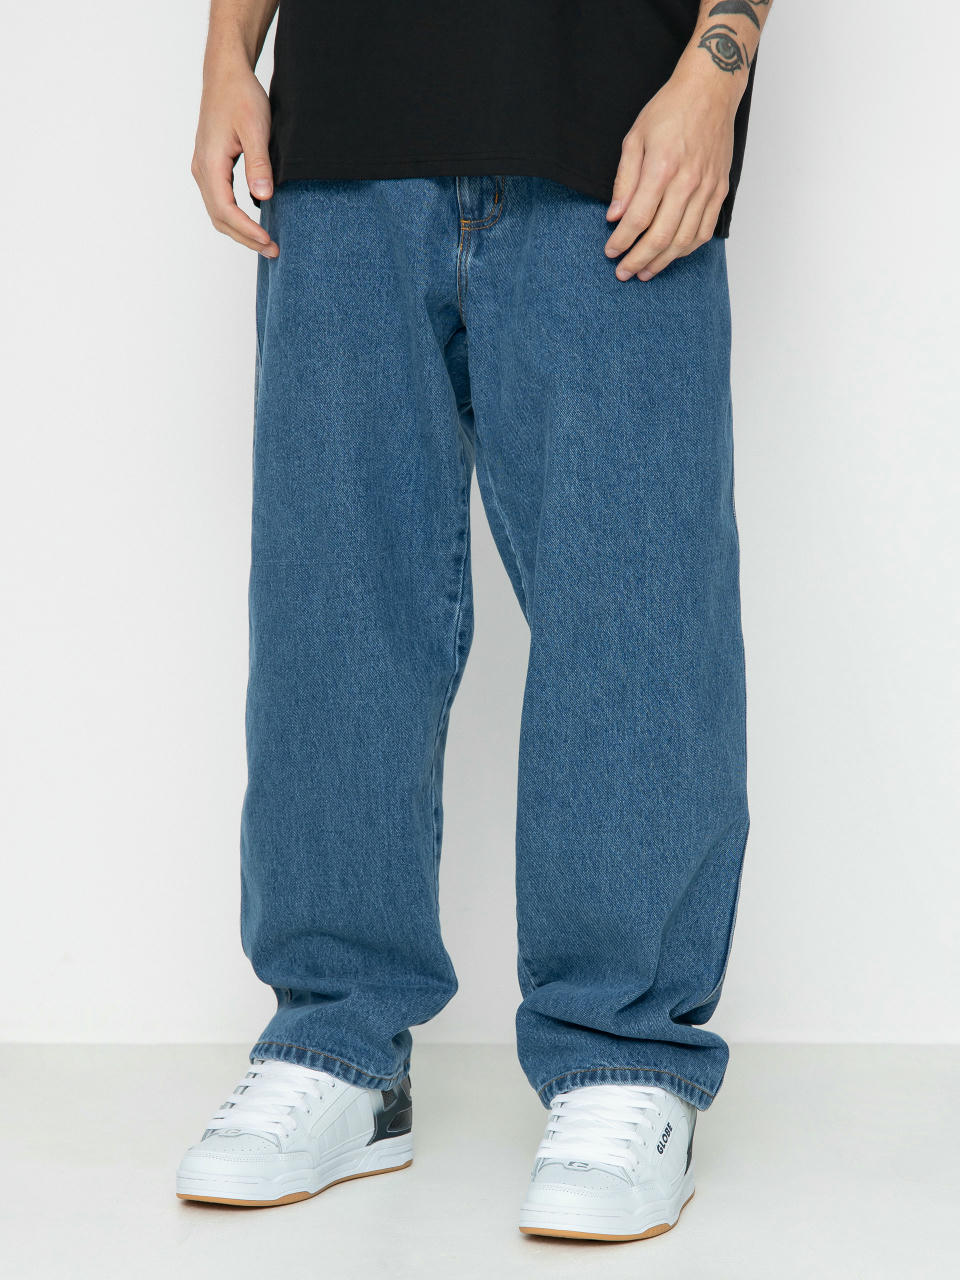 Spodnie Raw Hide Skateboards OG Jeans (denim blue)